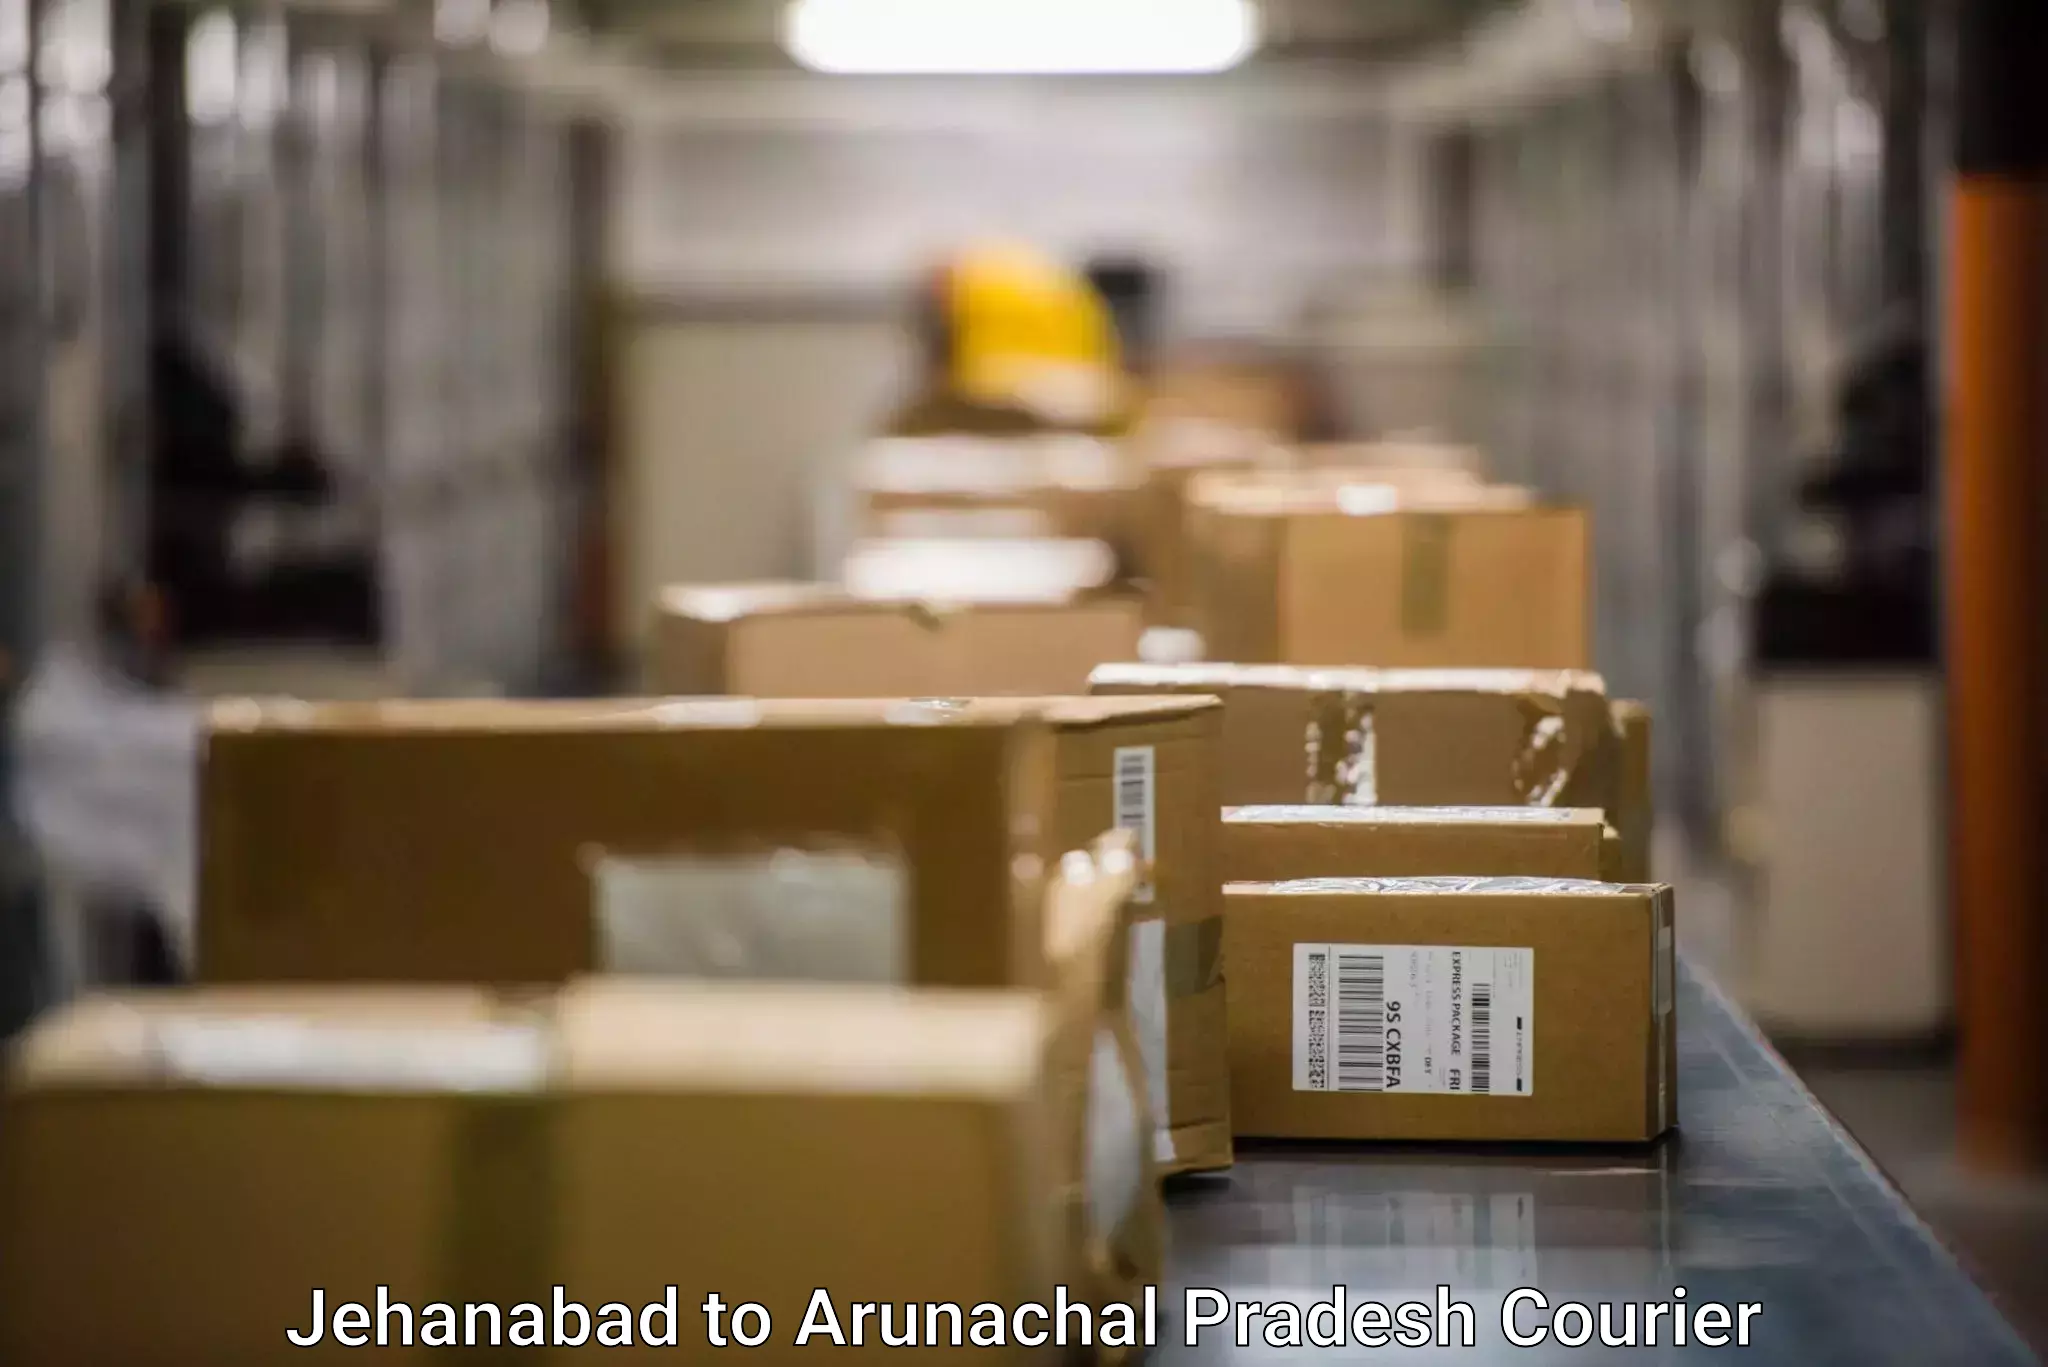 Efficient parcel service Jehanabad to Arunachal Pradesh